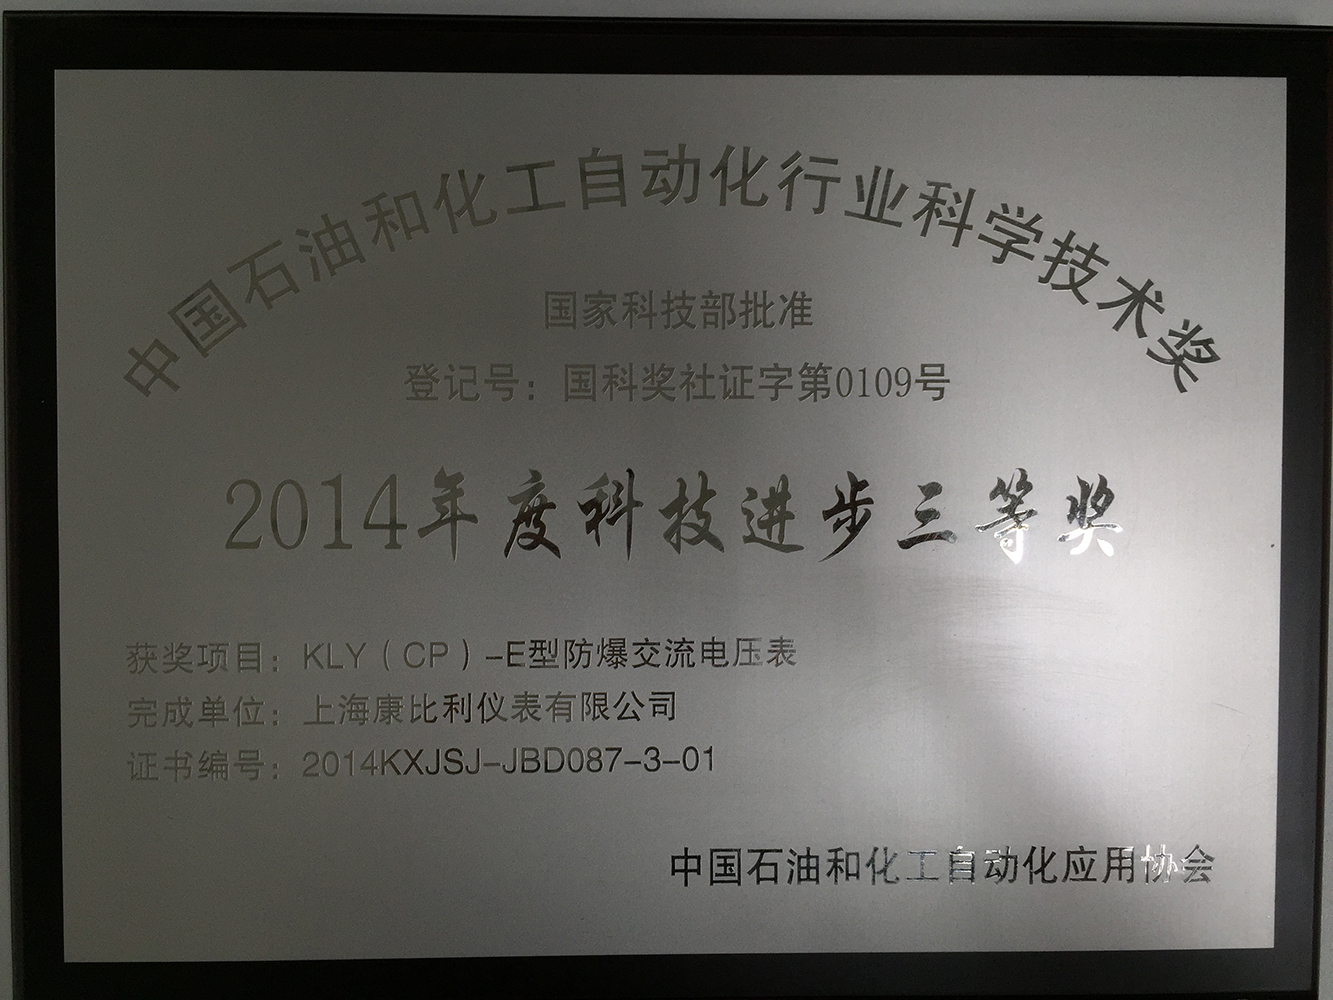 石化科技进步三等奖2014年度